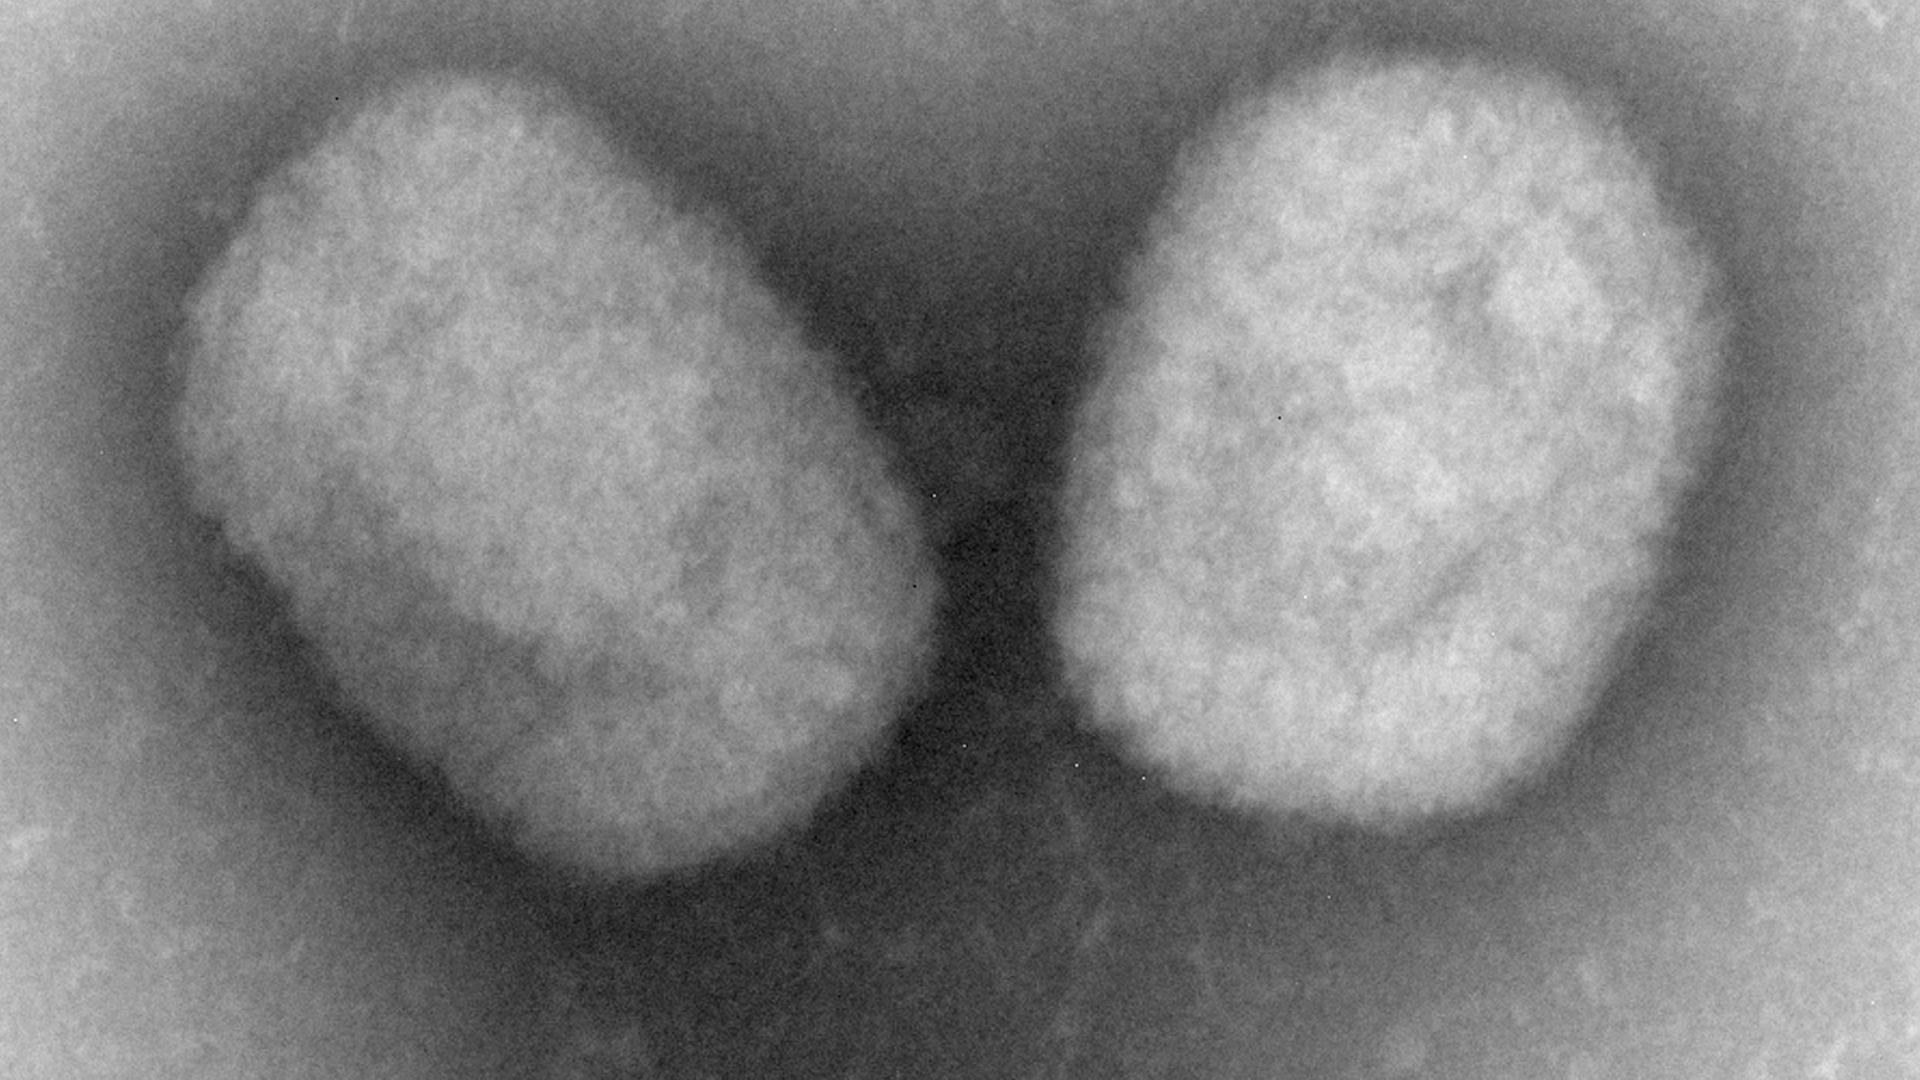 Mikroskopaufnahmen vom New Pox Virus